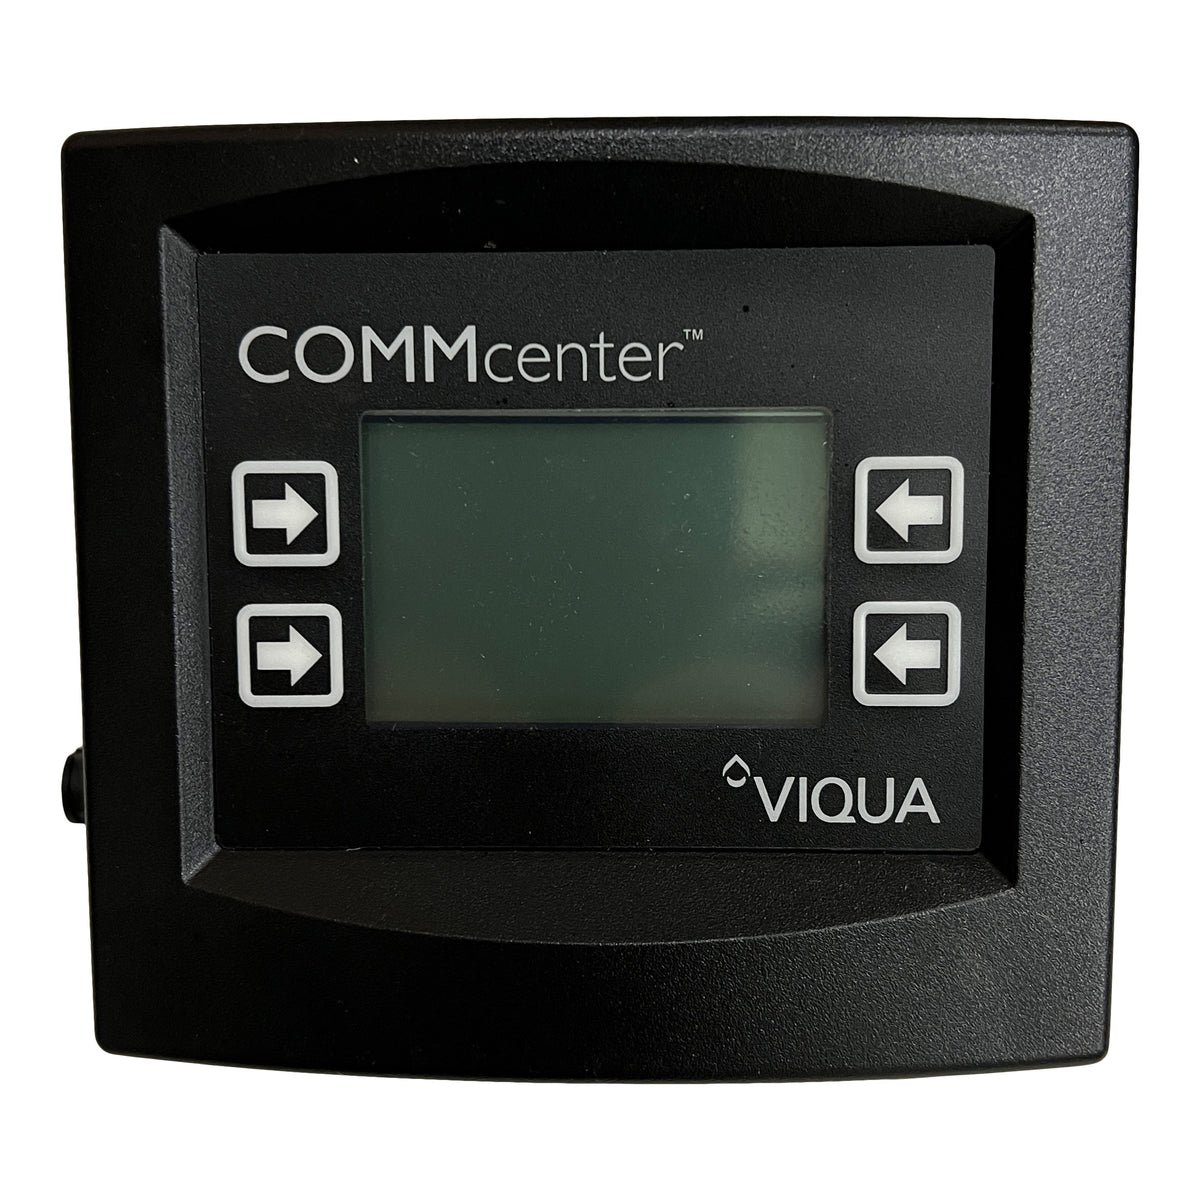 Viqua COMMcenter Part #270272-R 